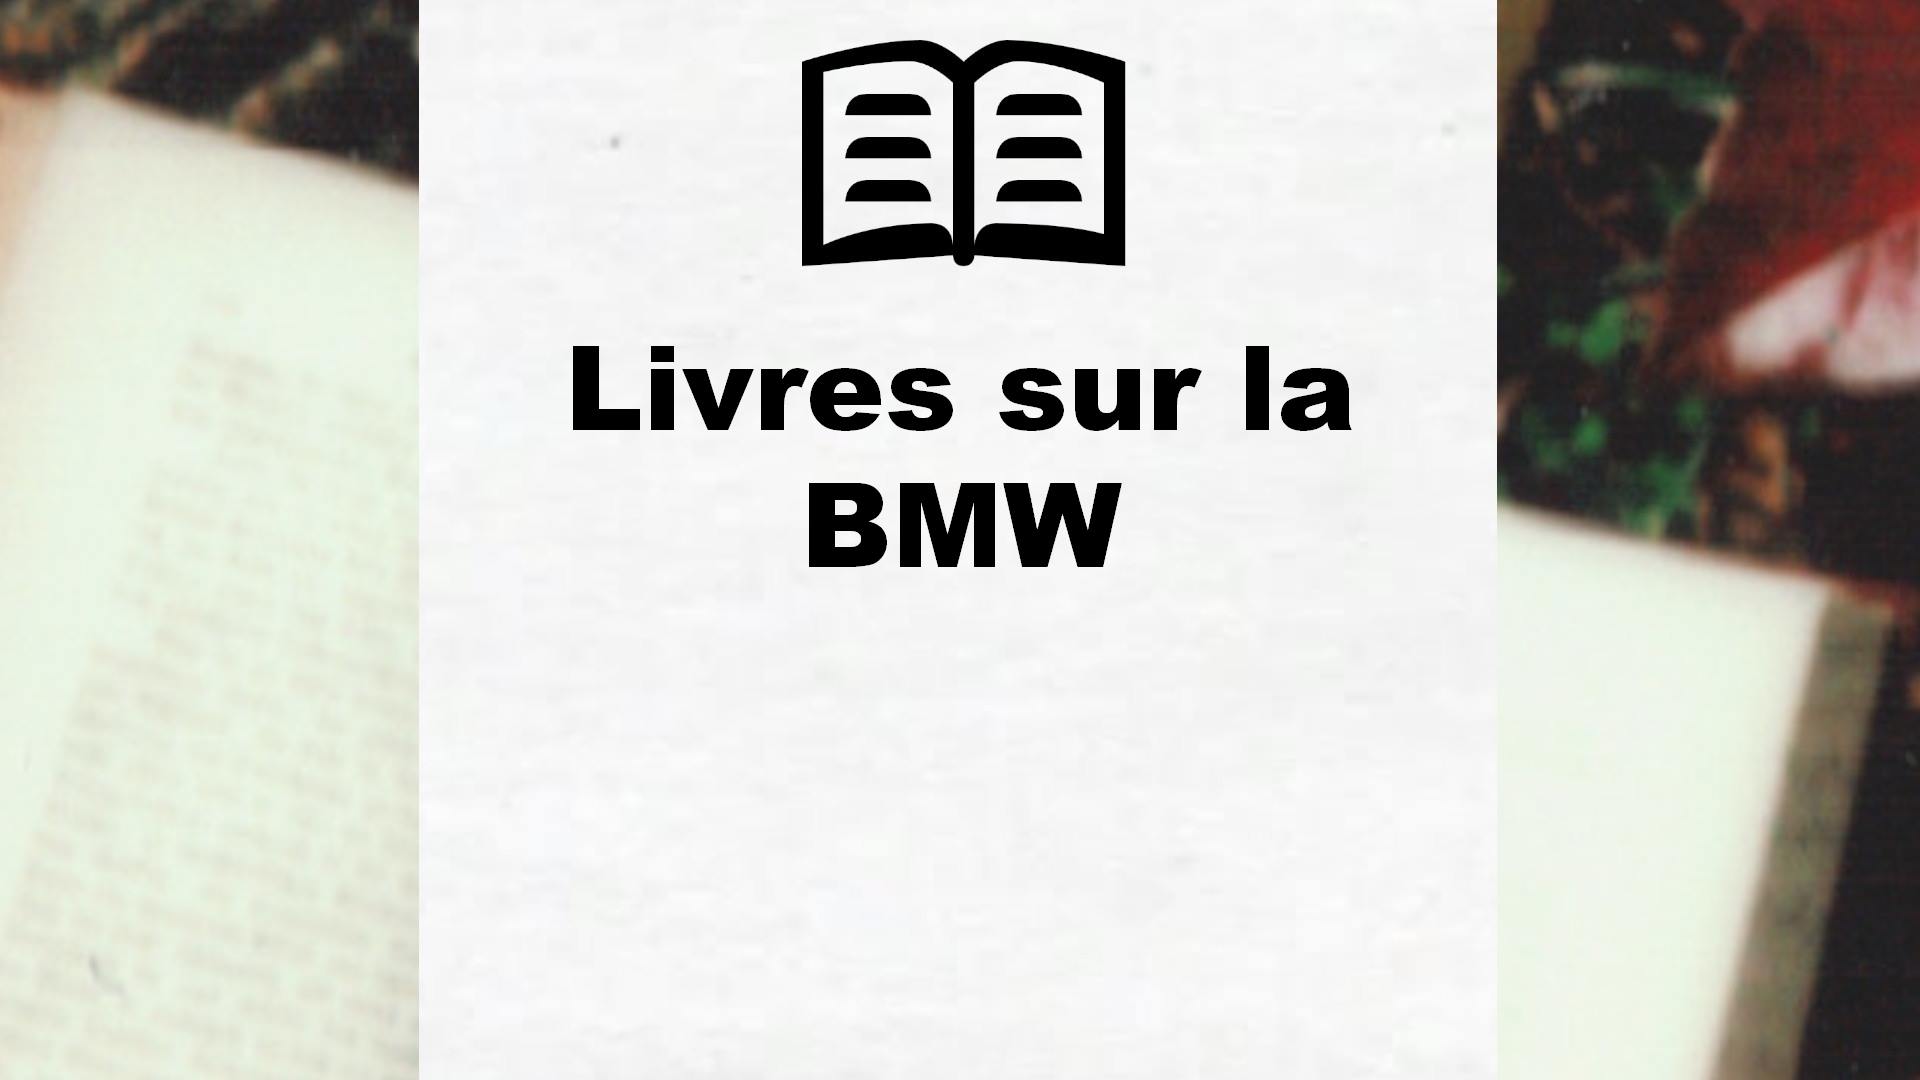 Livres sur la BMW